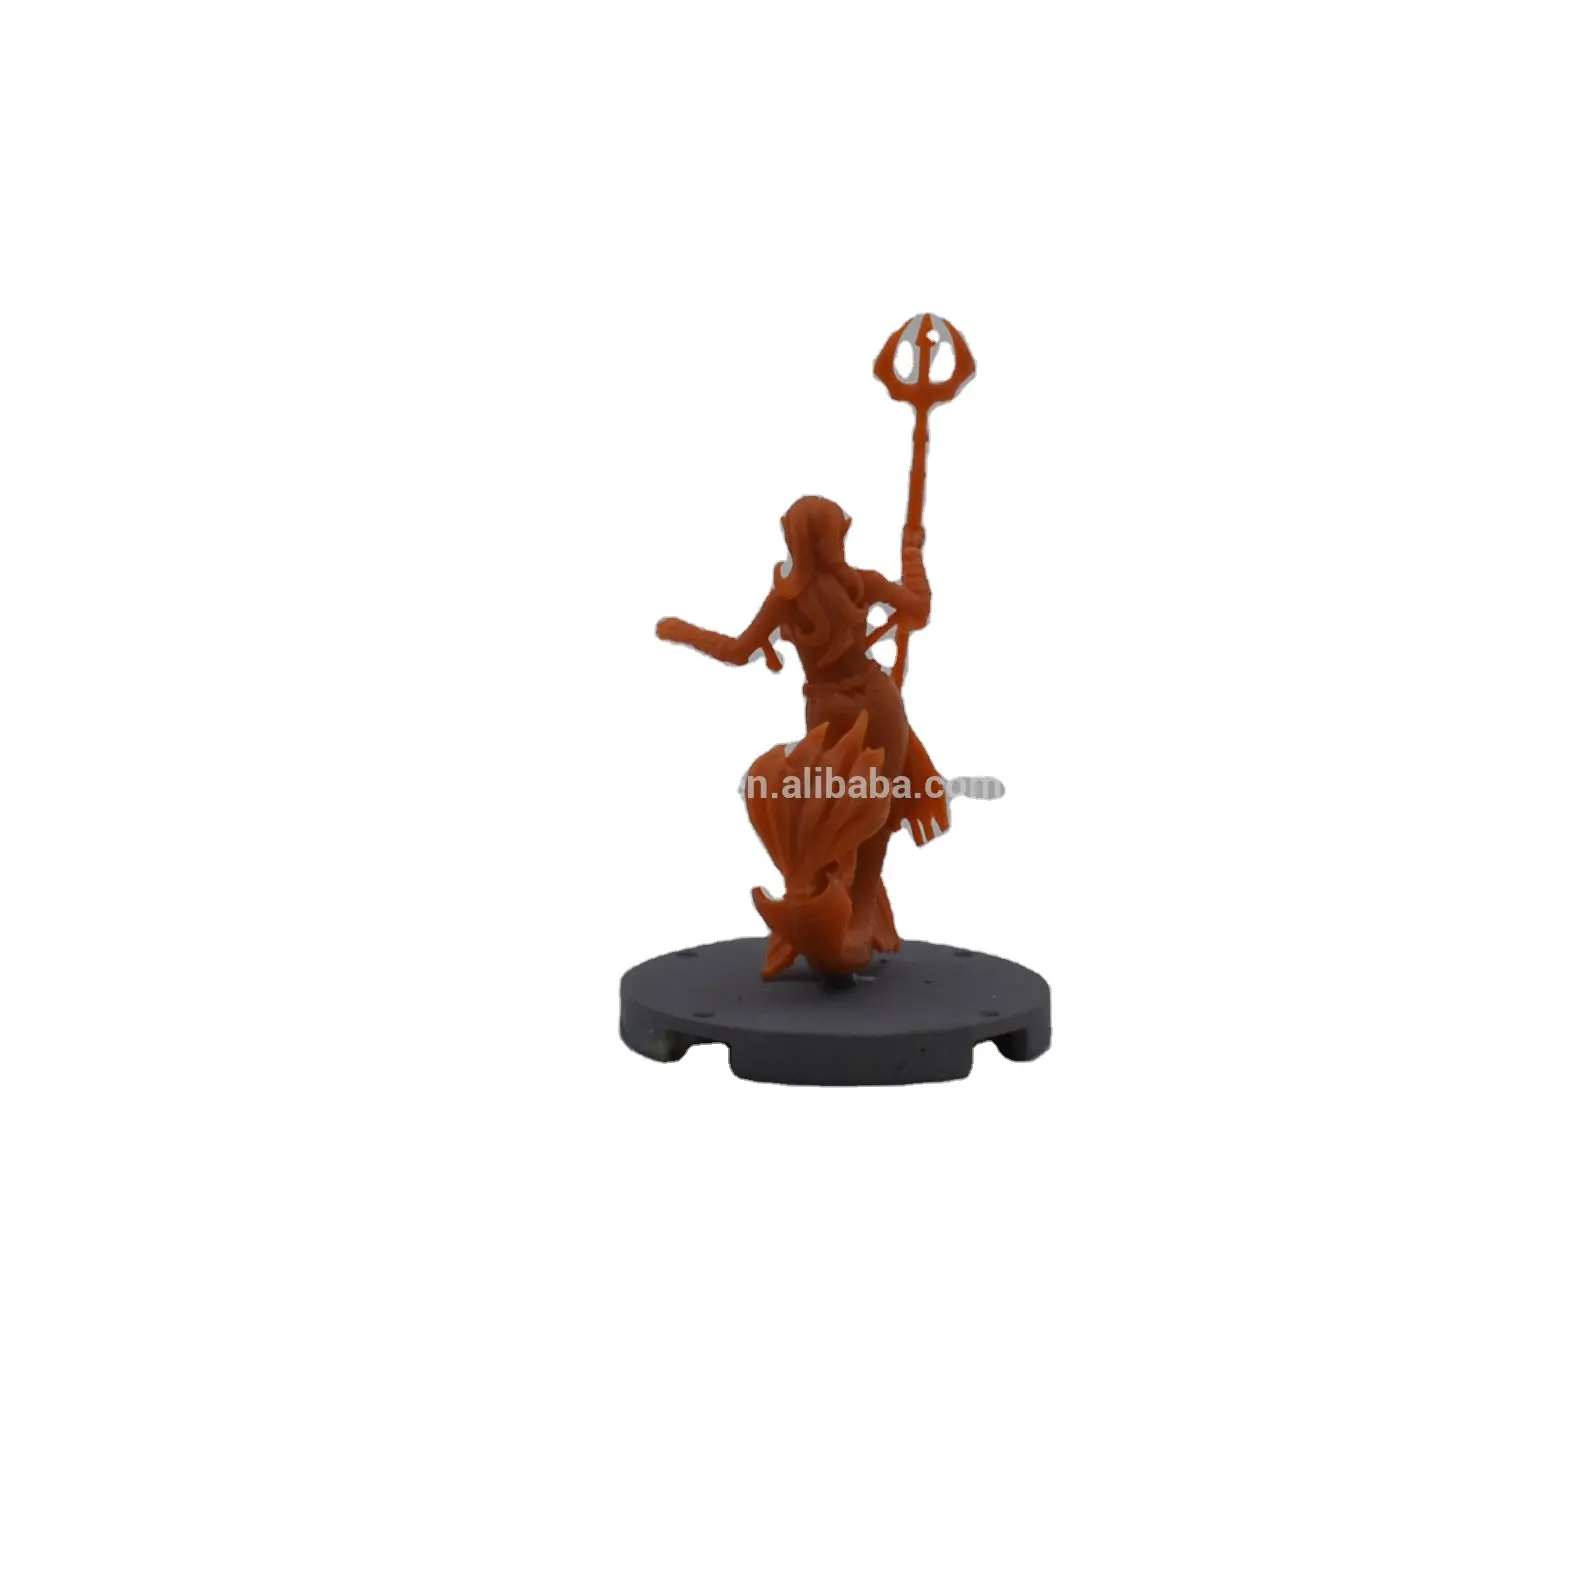 Benutzer definierte Miniatur figuren Miniaturen Ornamente benutzer definierte Modell römischen Krieger Miniatur hersteller China Lieferanten Figuren Monster